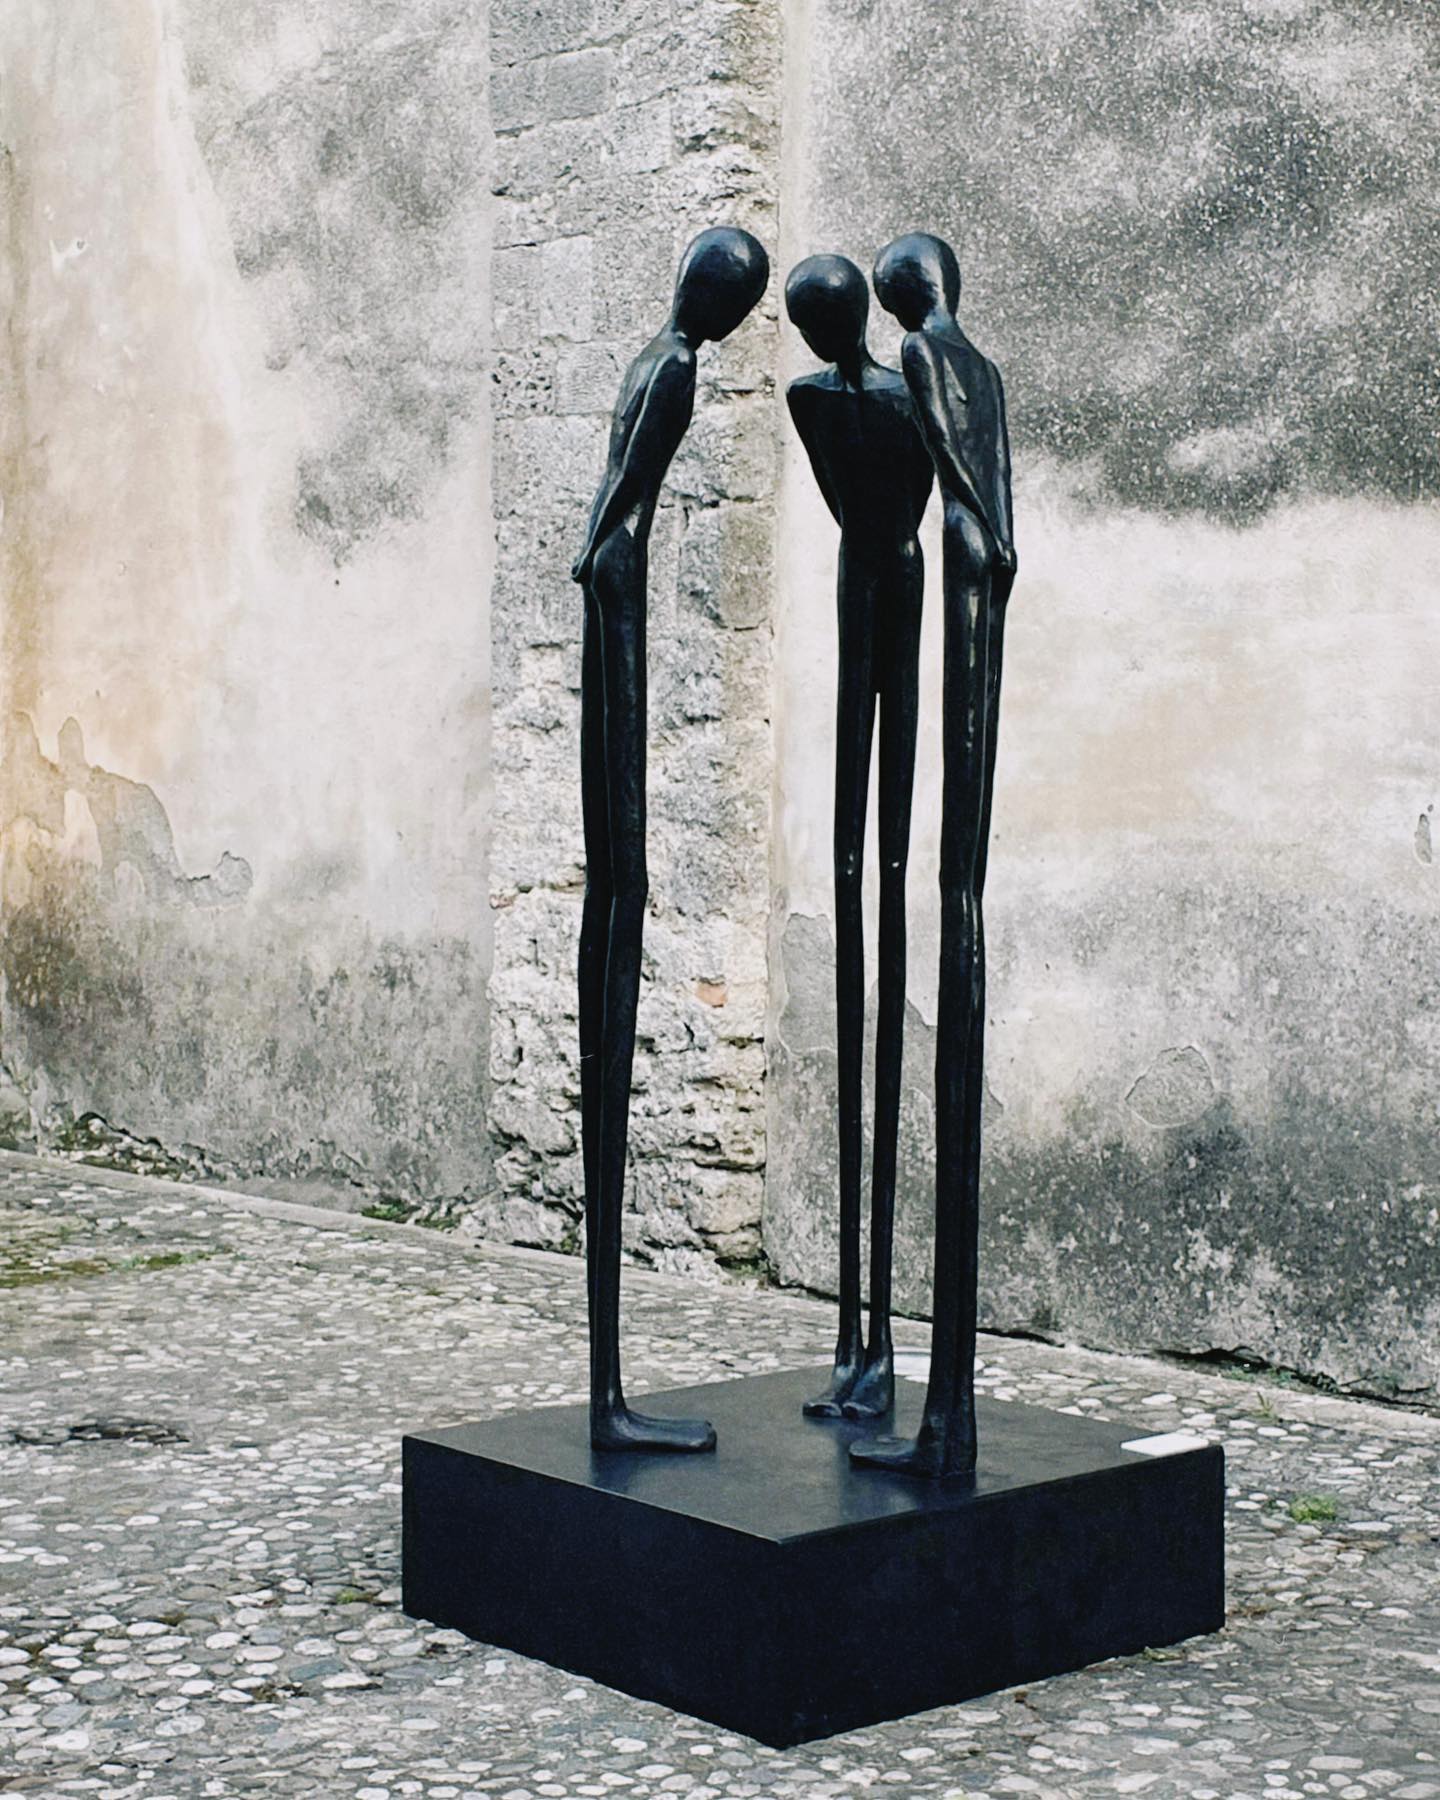 Art Rizoma. Exhibition view at Cittadella Vescovile di Gerace, 2022